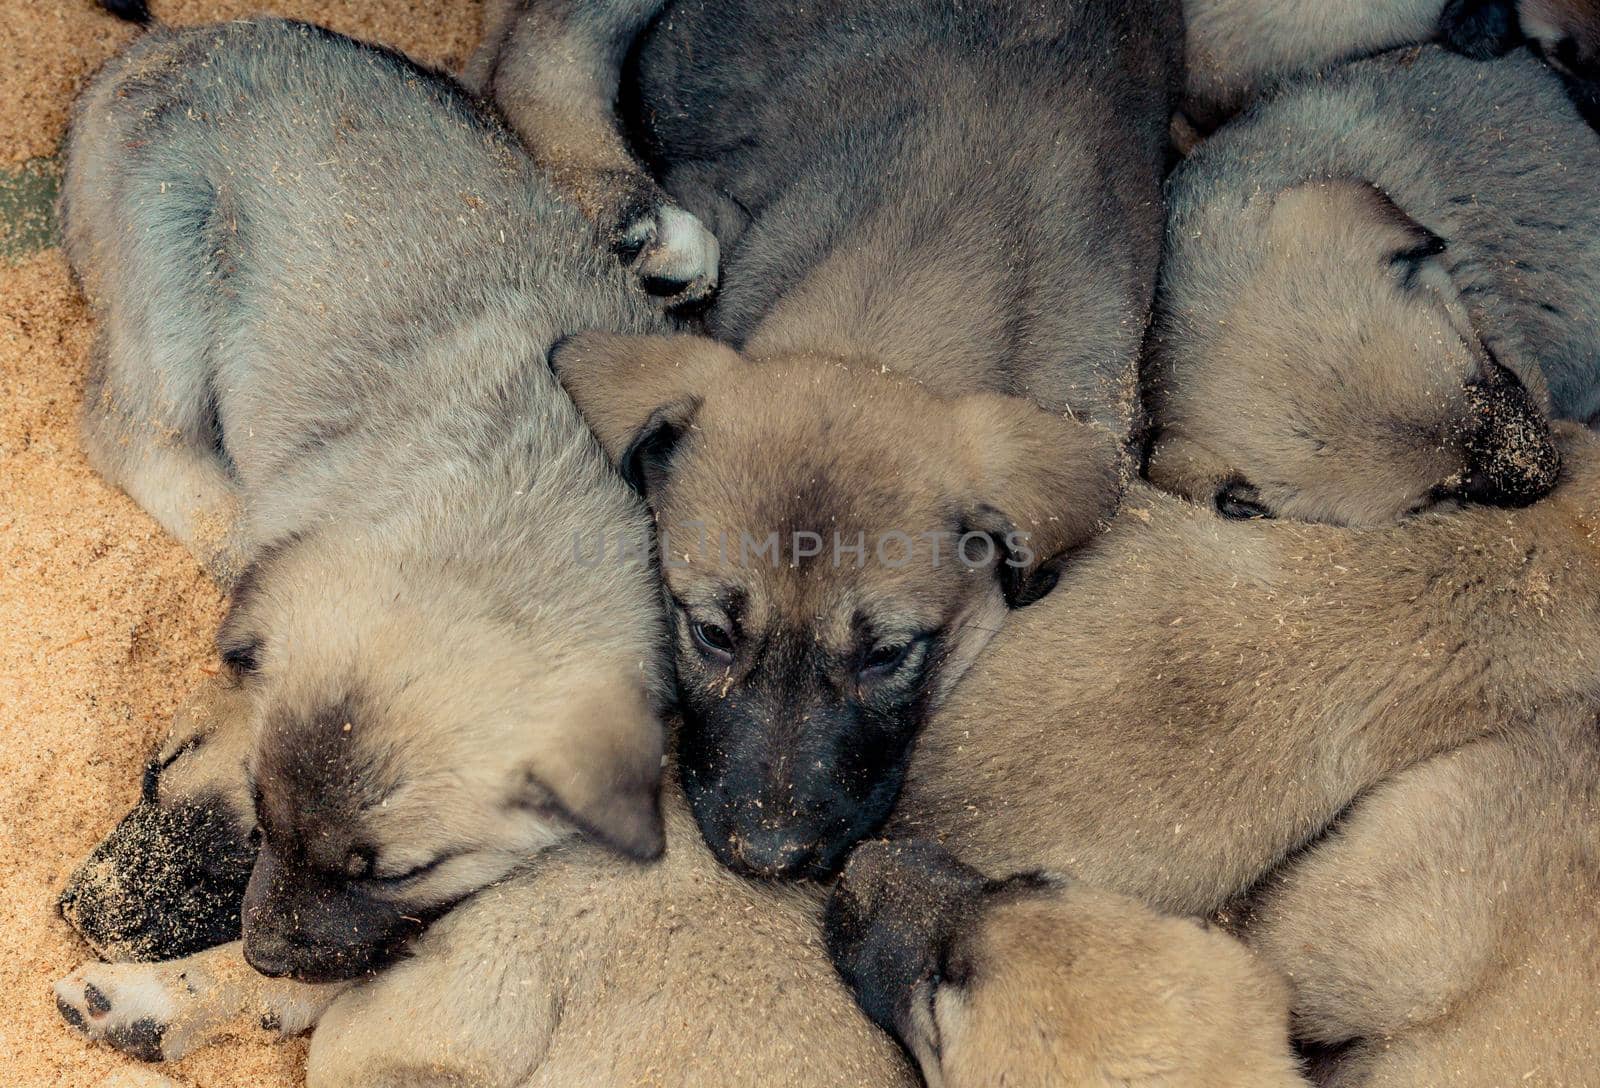 Turkish breed shepherd dog puppies Kangal as guarding dog by berkay